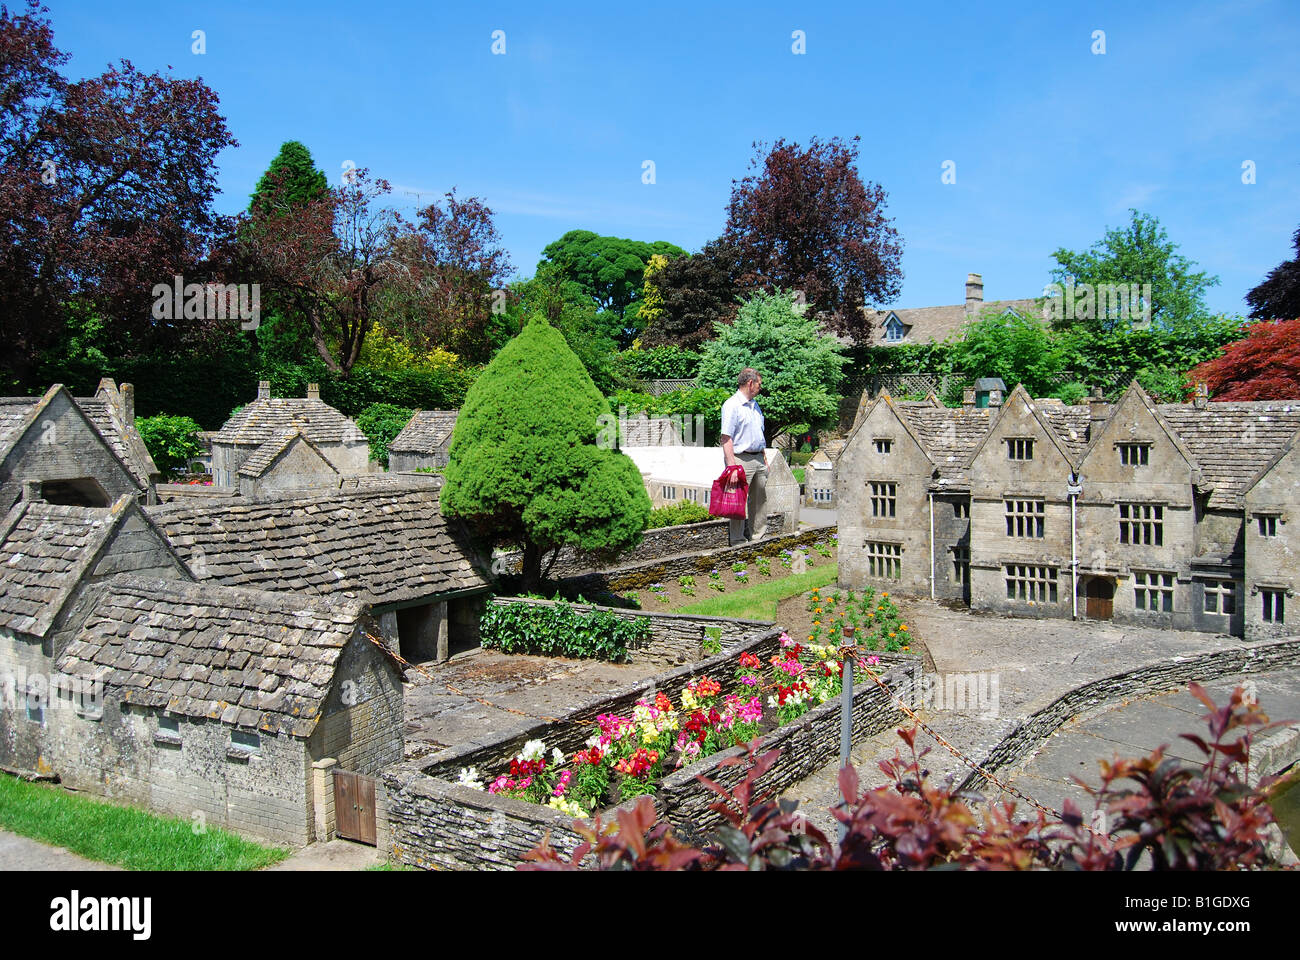 Le village modèle, Rissington Road, Bourton-on-the-water, Cotswolds, Gloucestershire, Angleterre, Royaume-Uni Banque D'Images